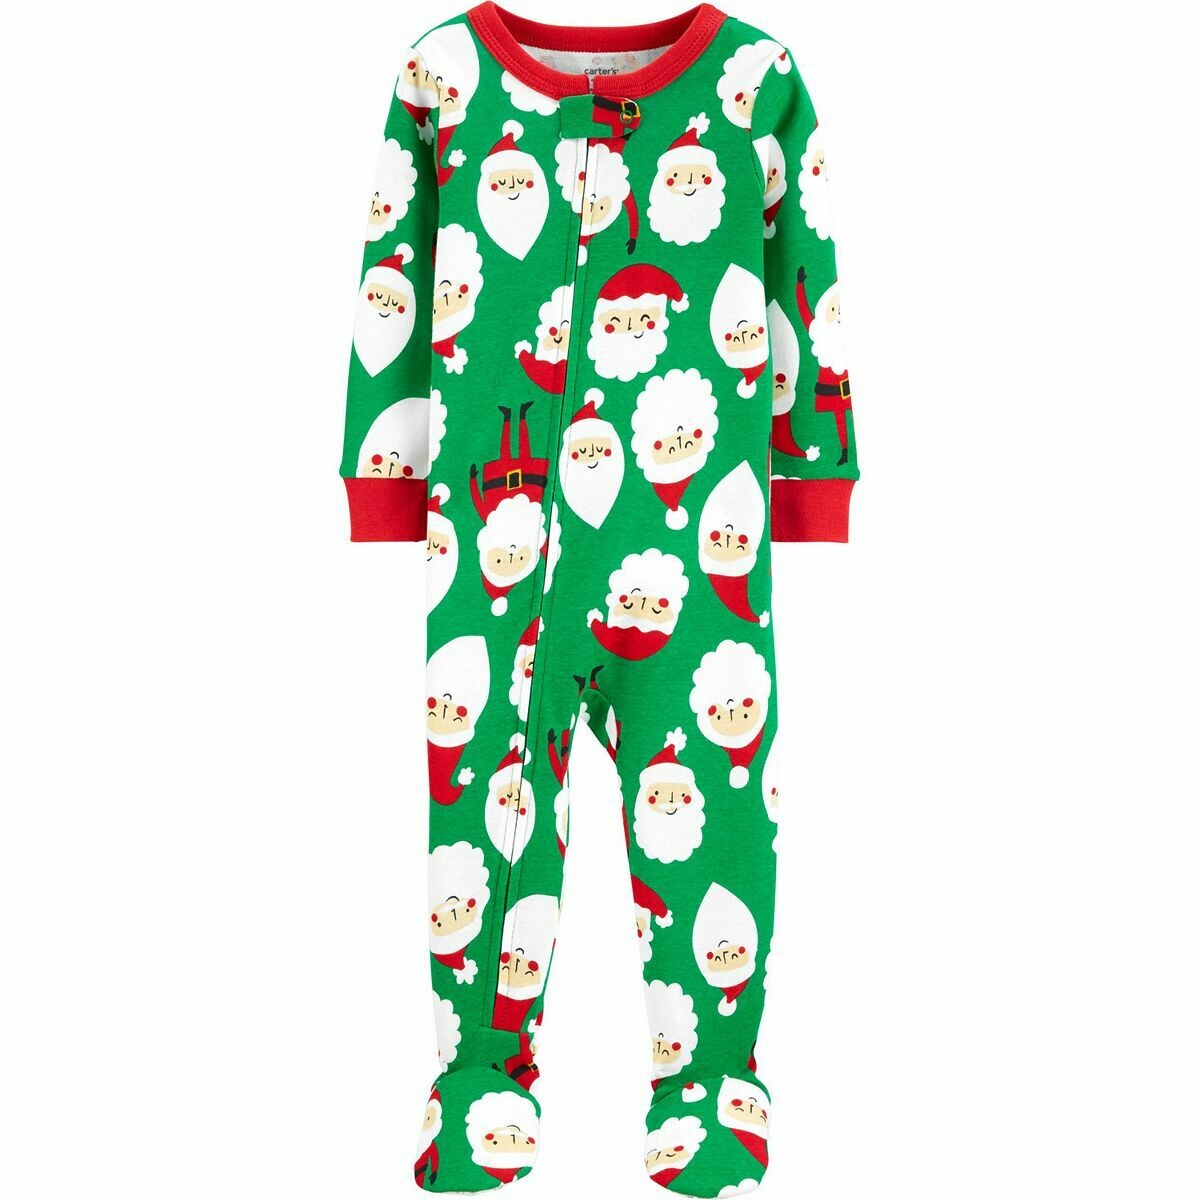 Carter's 1-Piece Christmas Santa Snug Fit Cotton Footie PJs, Infant Boy